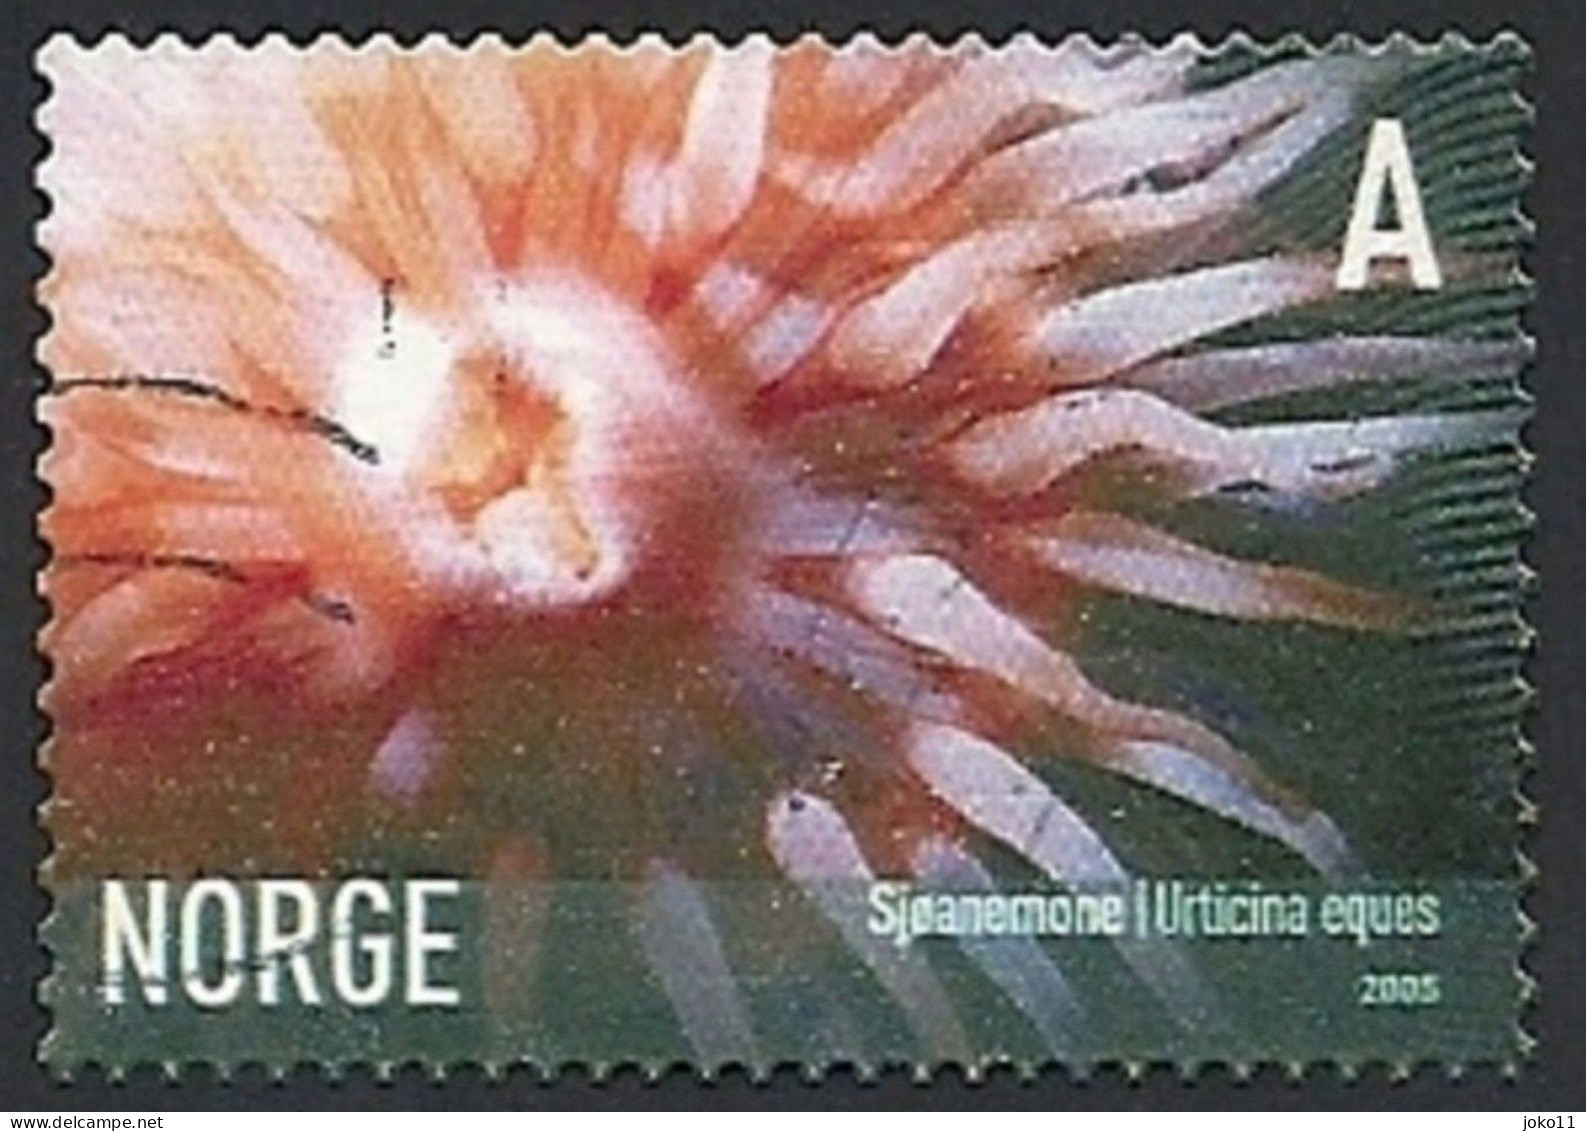 Norwegen, 2005, Mi.-Nr. 1545, Gestempelt - Used Stamps